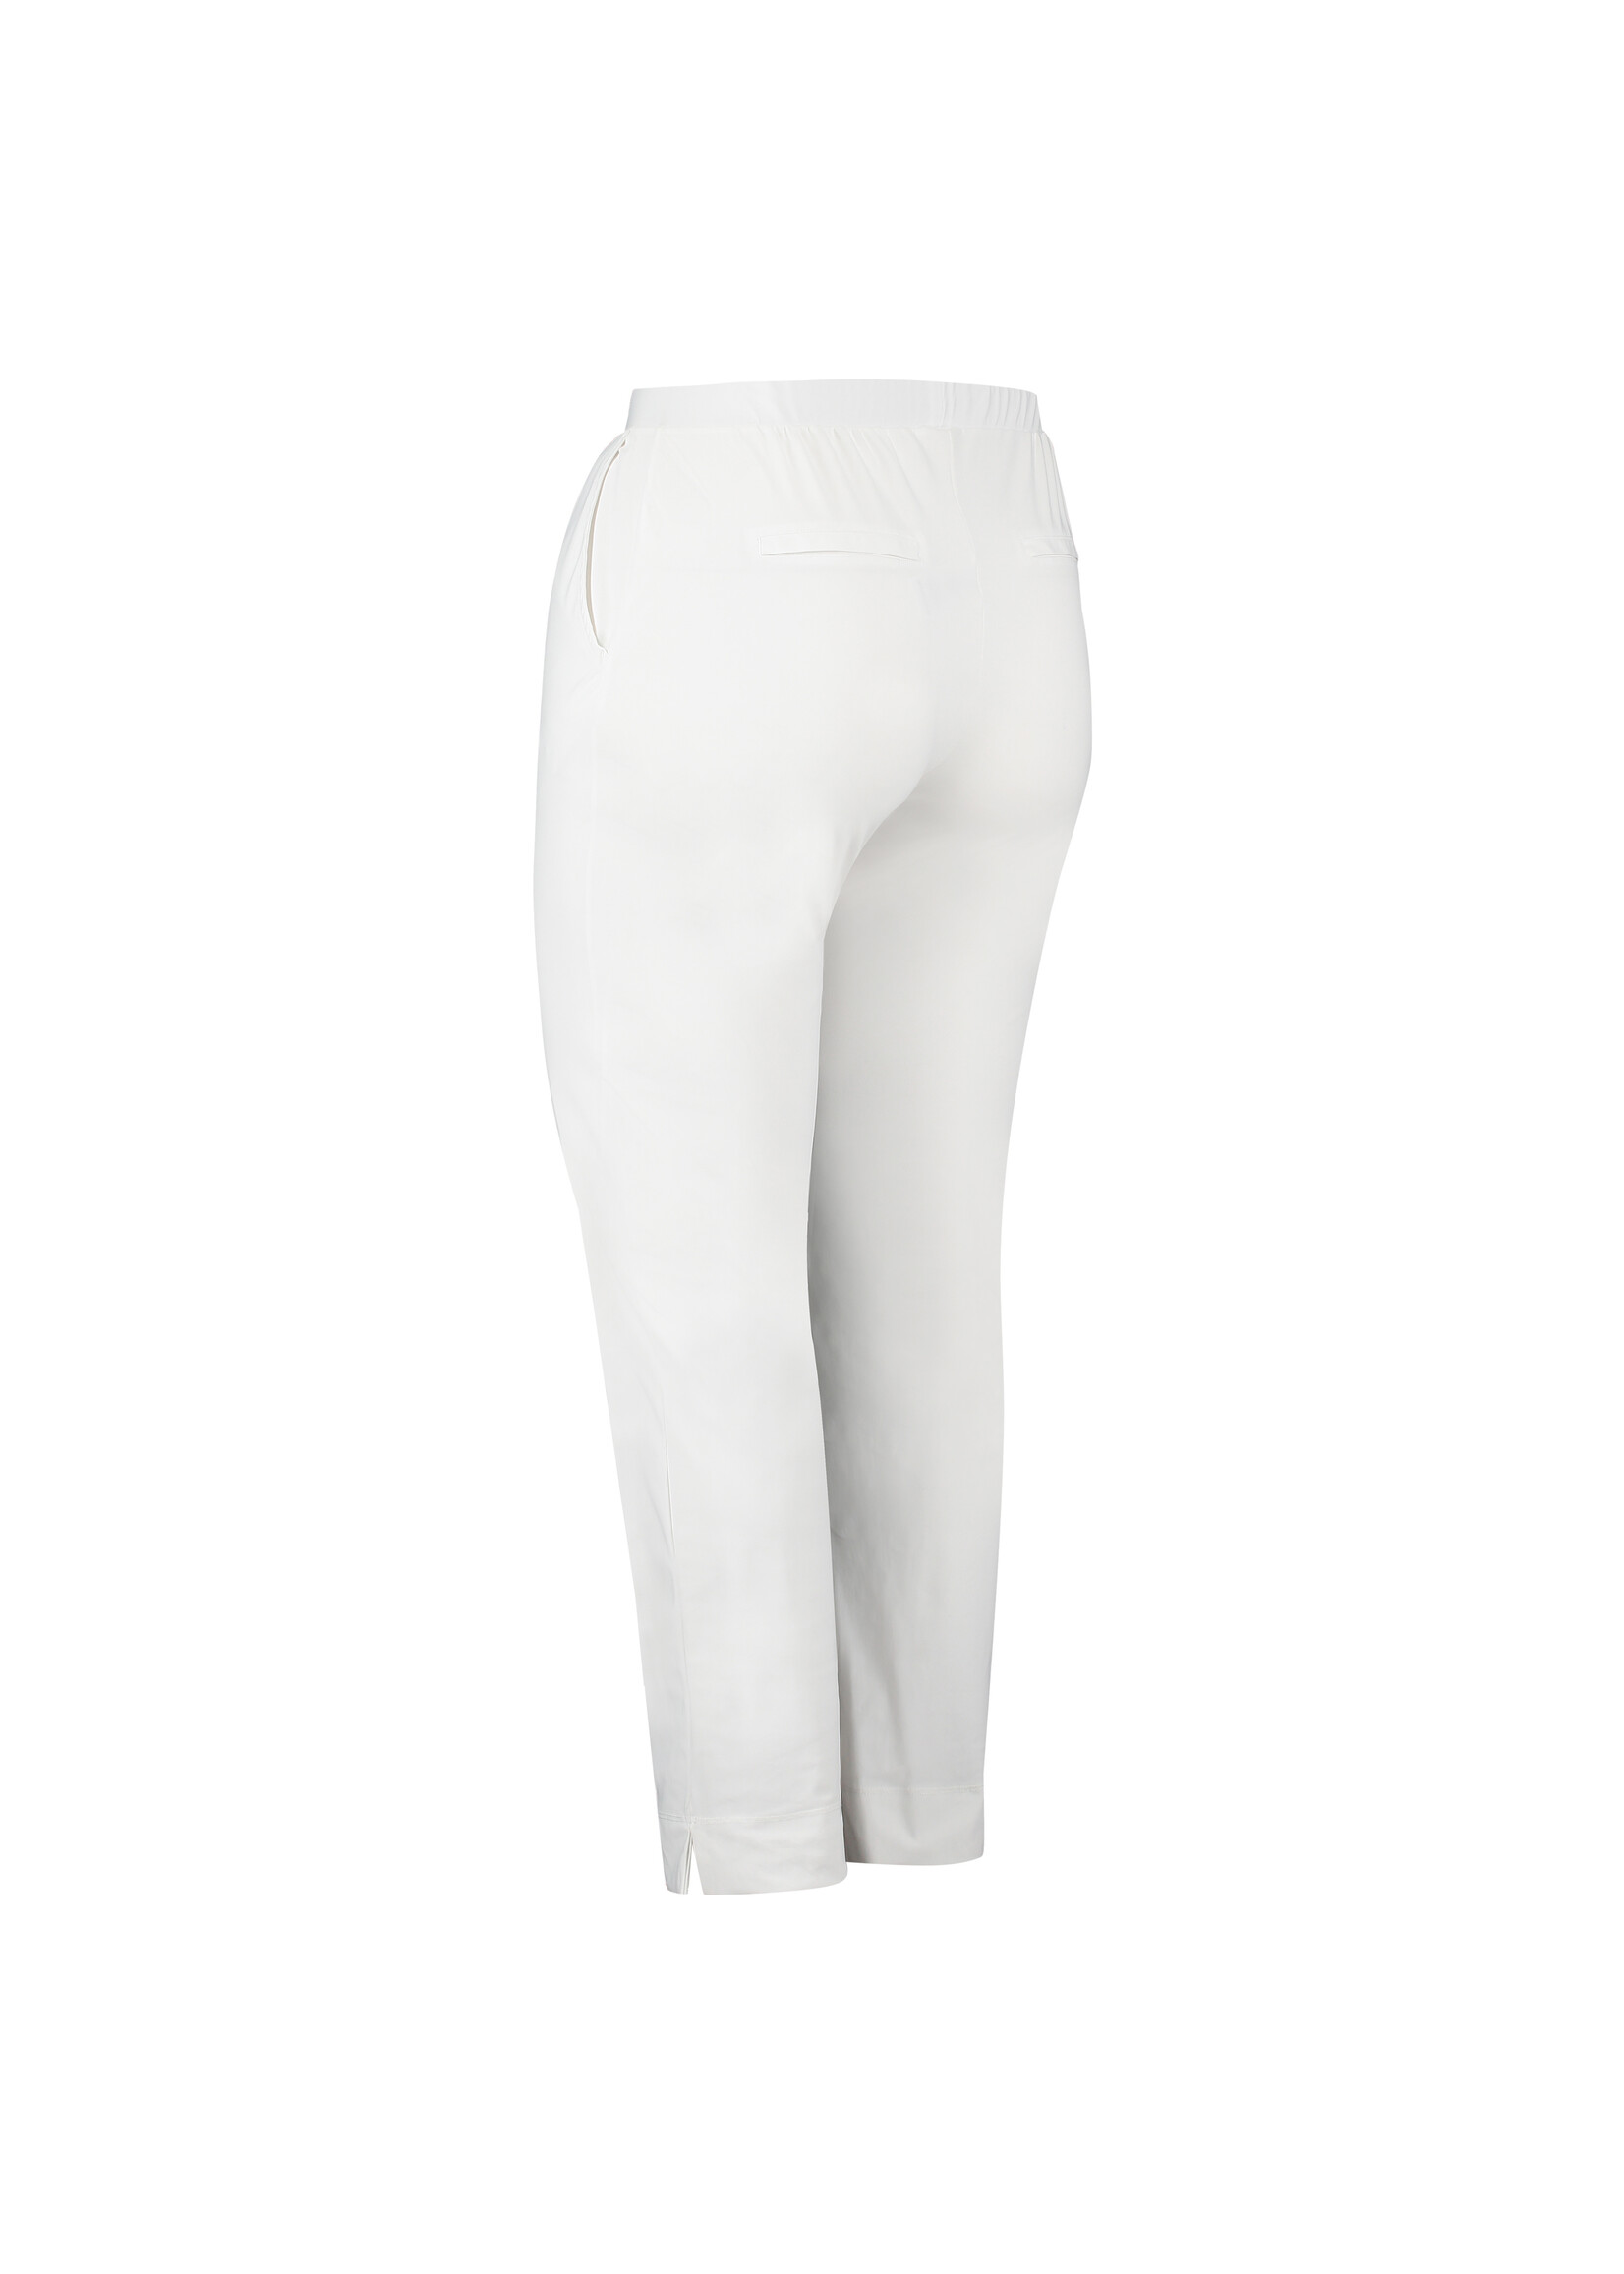 Pants 7/8 White - Boetiek Kijan - Shop hier je leukste kleding voor dames  vanaf maat 40